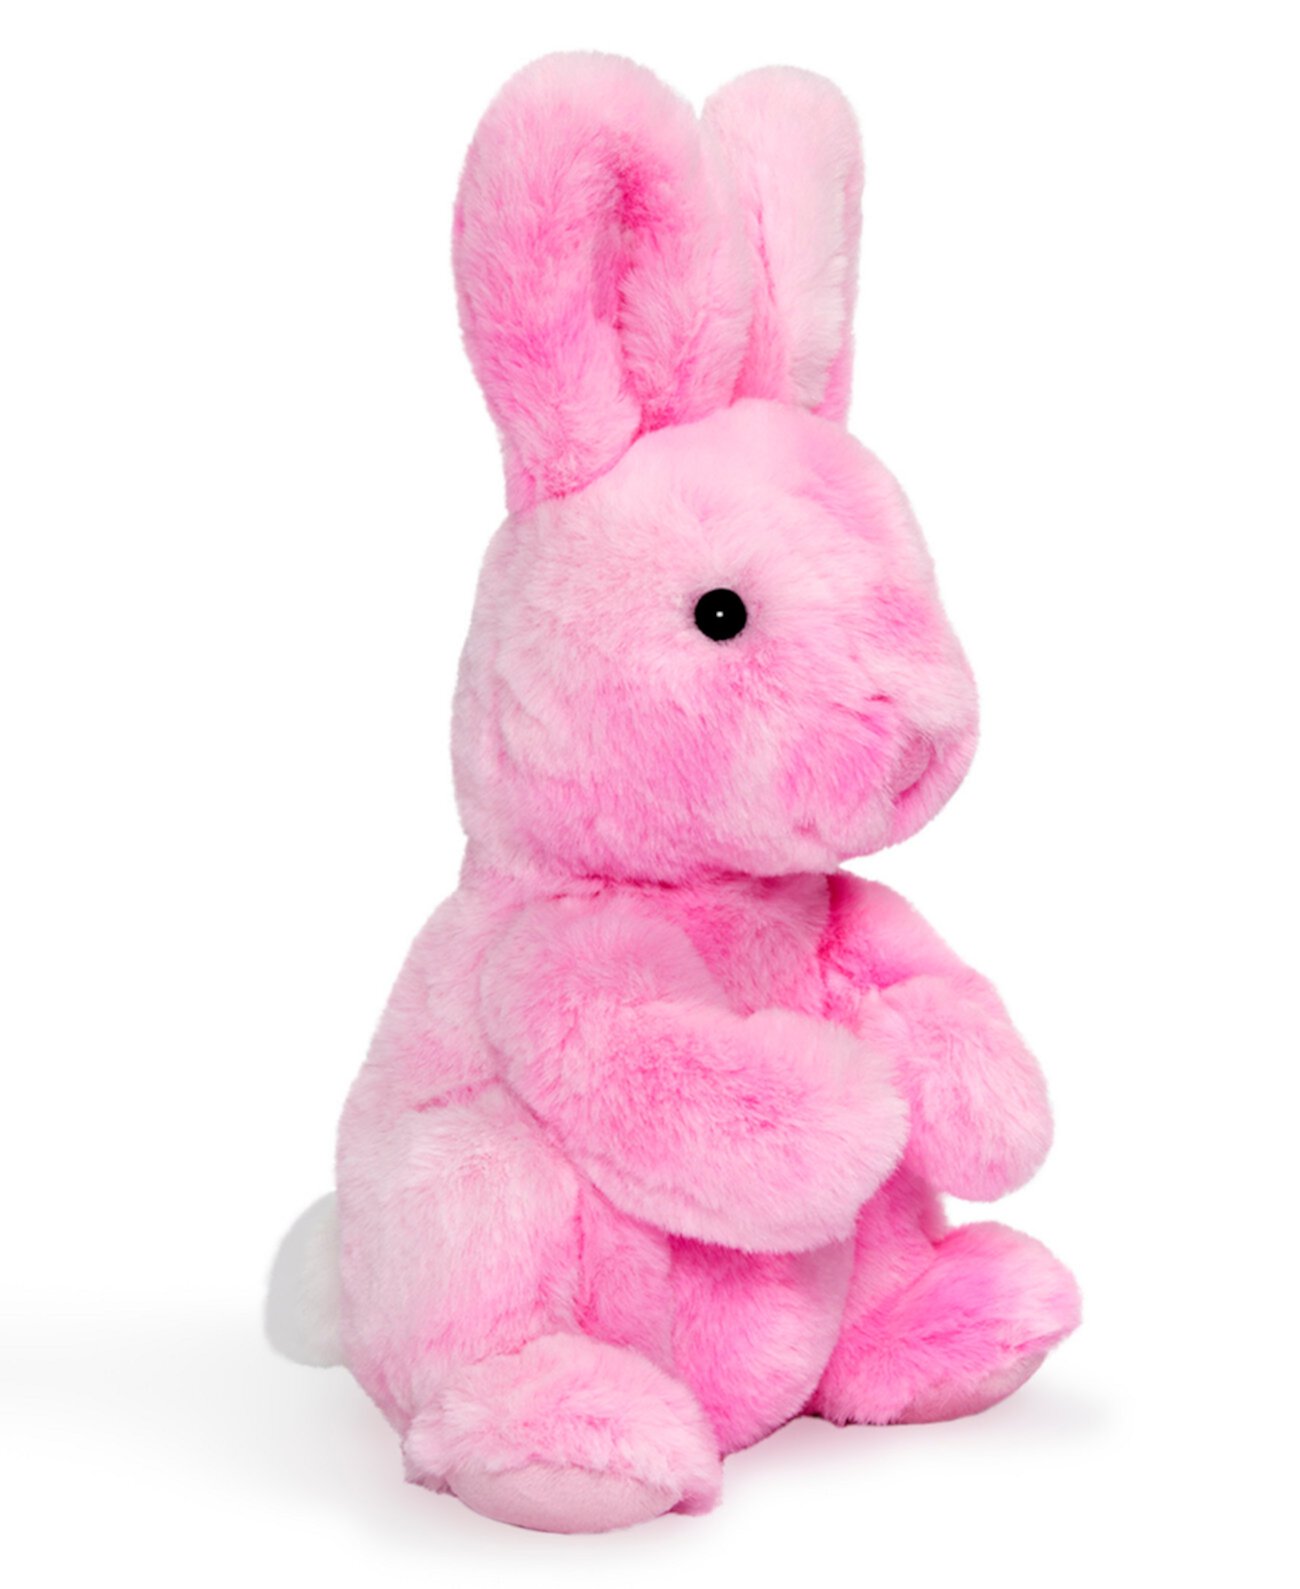 9-дюймовый плюшевый кролик Тай-Дай Geoffrey's Toy Box